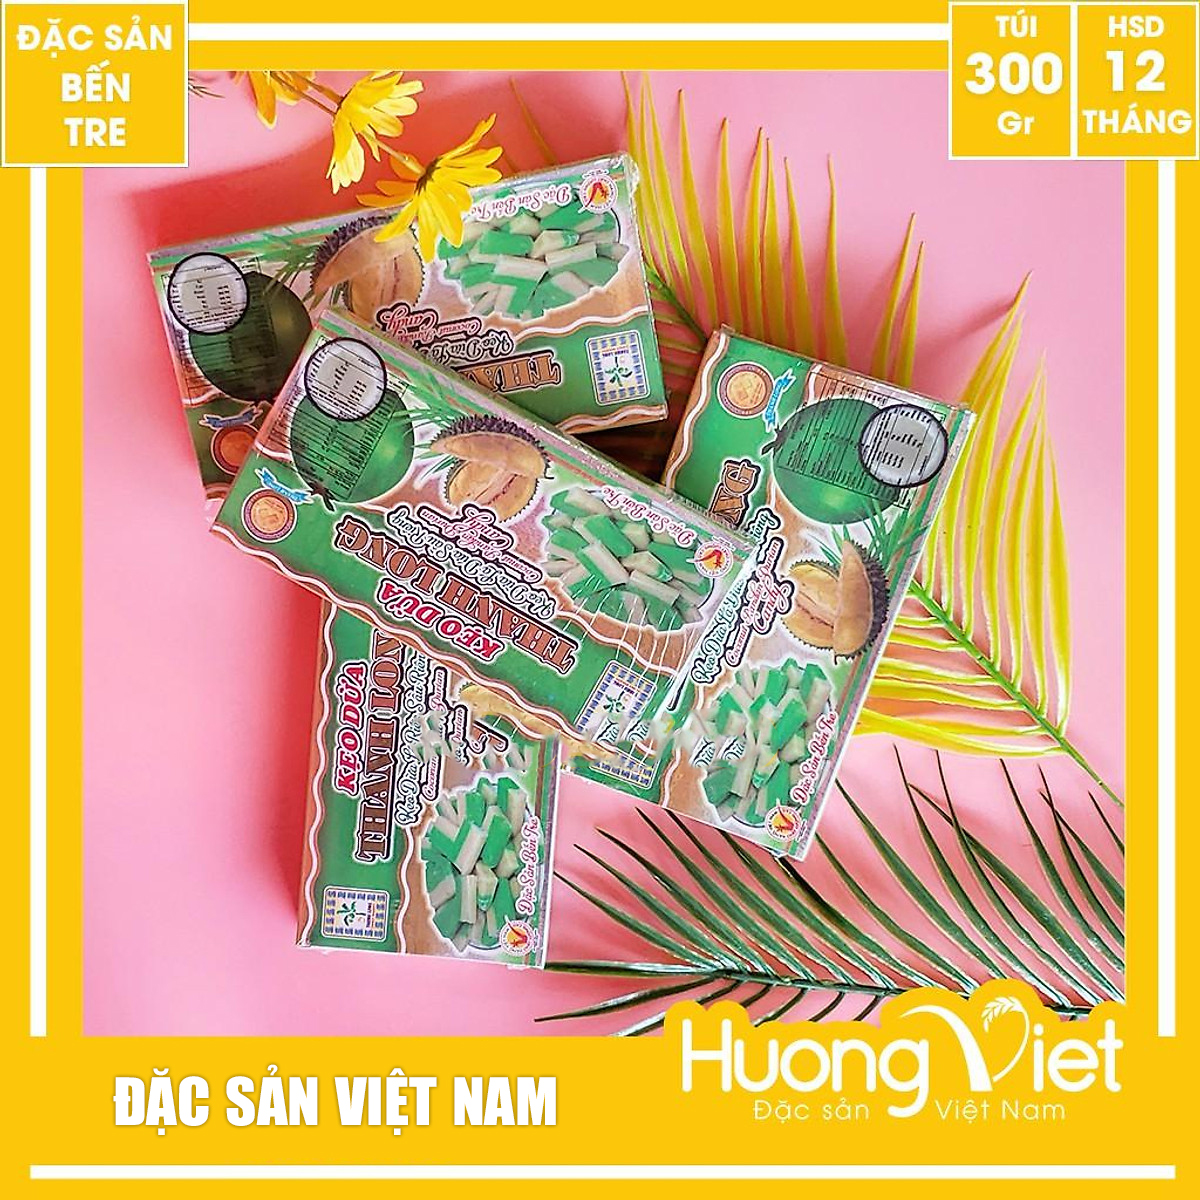 Đặc Sản Bến Tre - Kẹo Dừa Lá Dứa Sầu Riêng Thanh Long 300G, Kẹo Dừa Bến Tre Gia Truyền